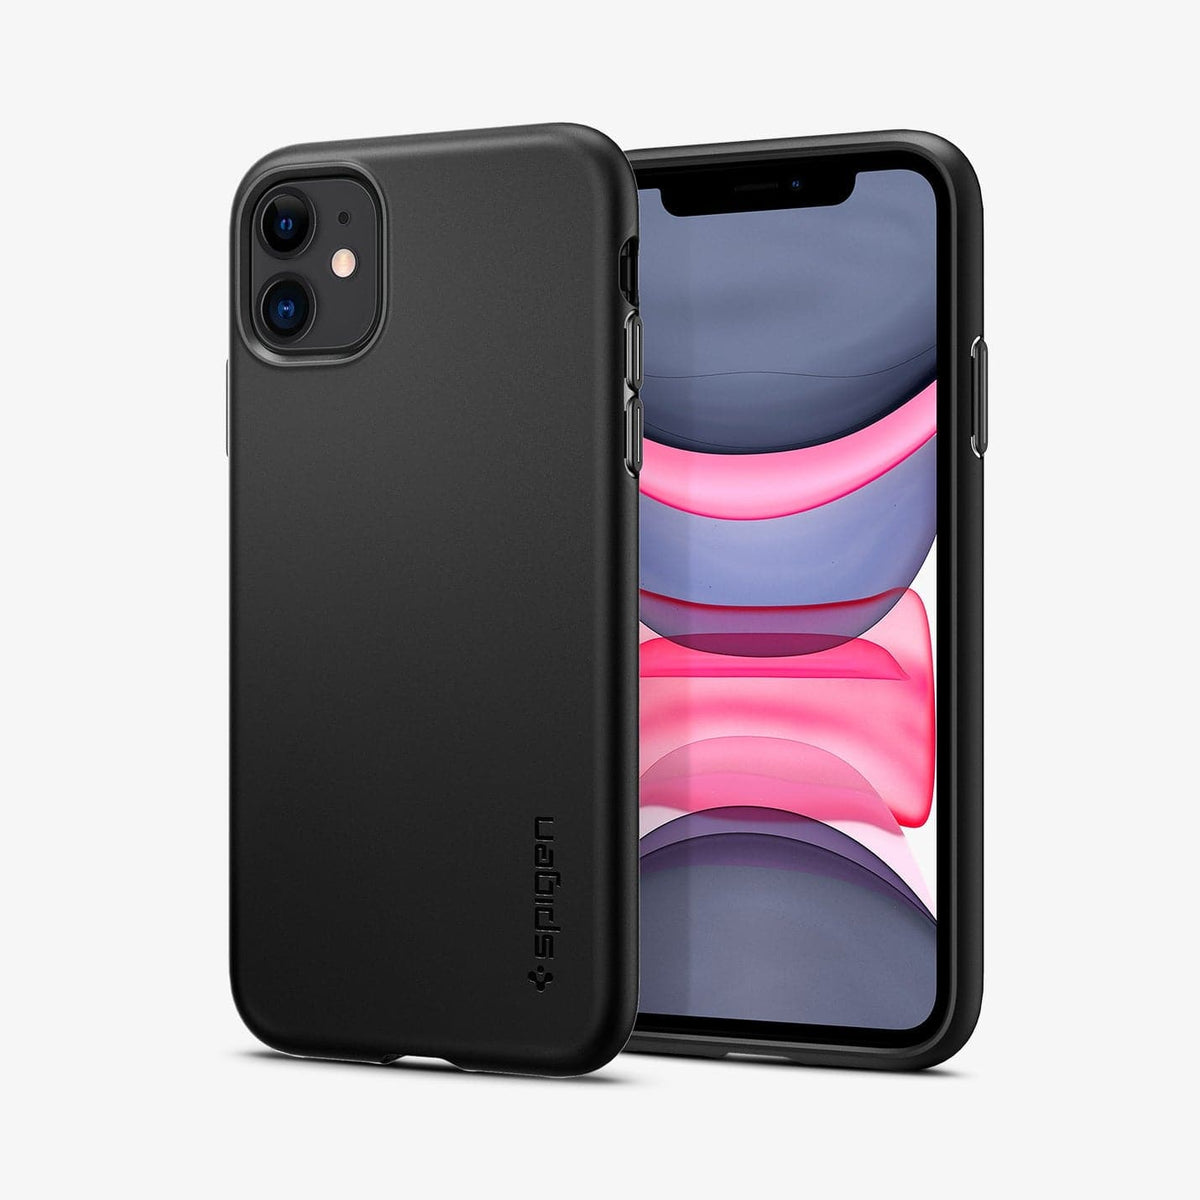 iPhone 11 Series Thin Fit Pro Case -  Official Site – Spigen Inc